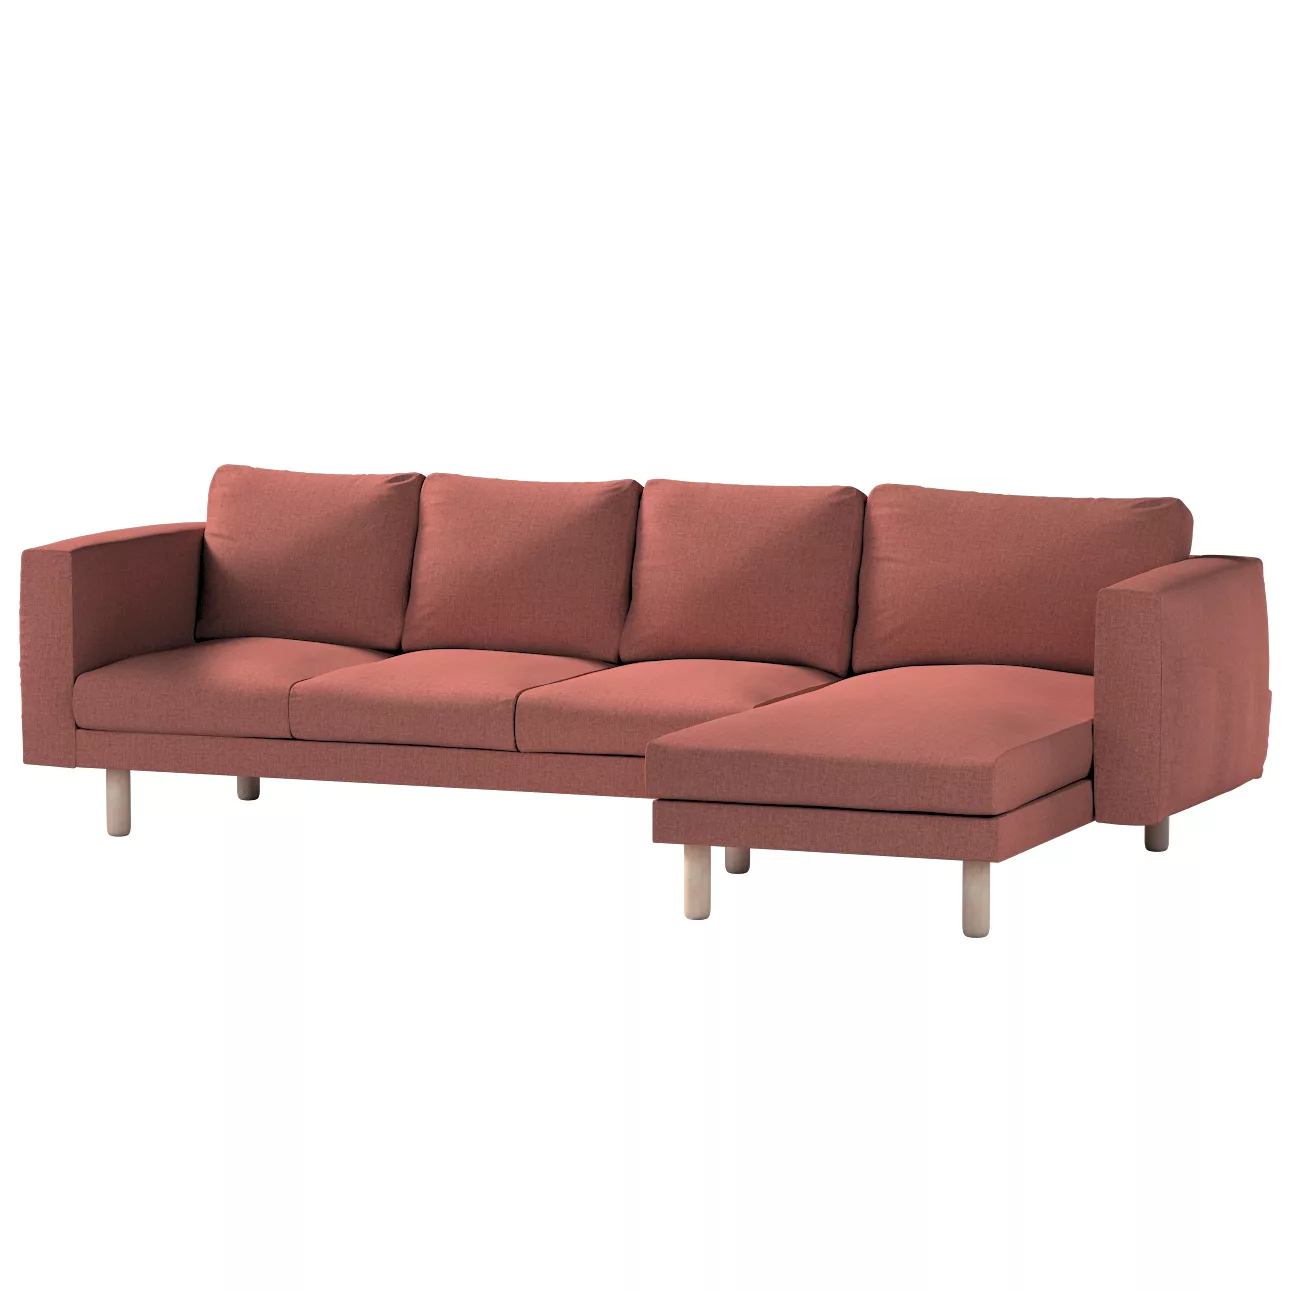 Bezug für Norsborg 4-Sitzer Sofa mit Recamiere, cognac braun, Norsborg Bezu günstig online kaufen